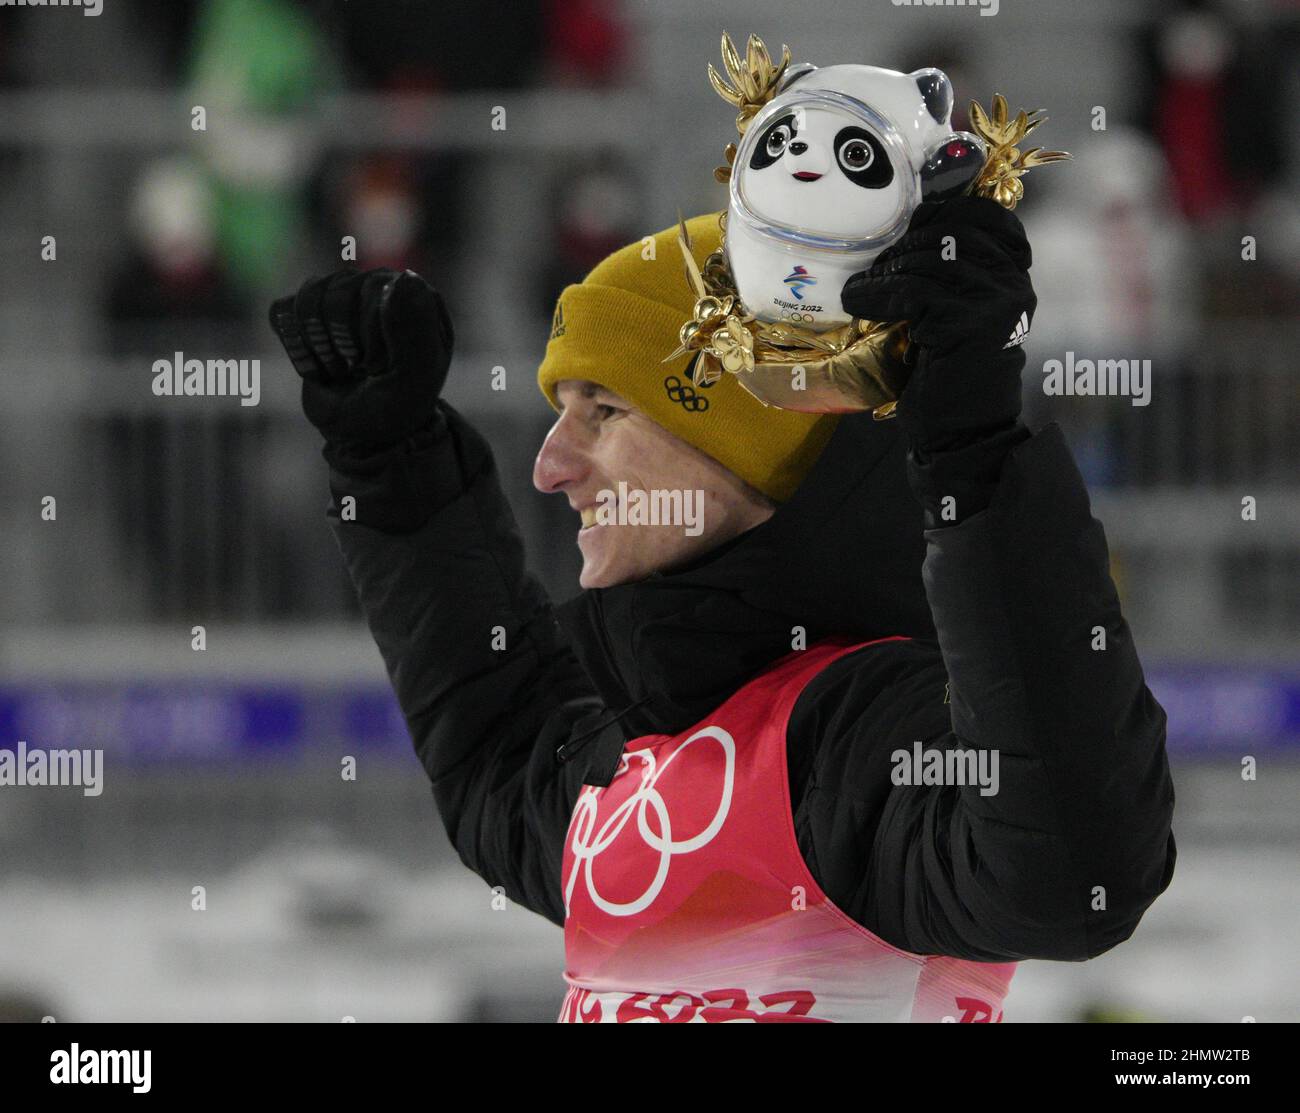 Zhangjiakou, China. 12th Feb, 2022. El medallista de bronce Karl Geiger, de Alemania, ondea después de que los hombres de esquí salten las finales individuales de las Grandes Colinas en los Juegos Olímpicos de Invierno de 2022 en Zhangjiakou, China, el sábado 12 de febrero de 2022. Marius Lindvik de Noruega ganó la medalla de oro y Ryoyu Kobayashi de Japón ganó la medalla de plata. Foto de Bob Strong/UPI Crédito: UPI/Alamy Live News Foto de stock